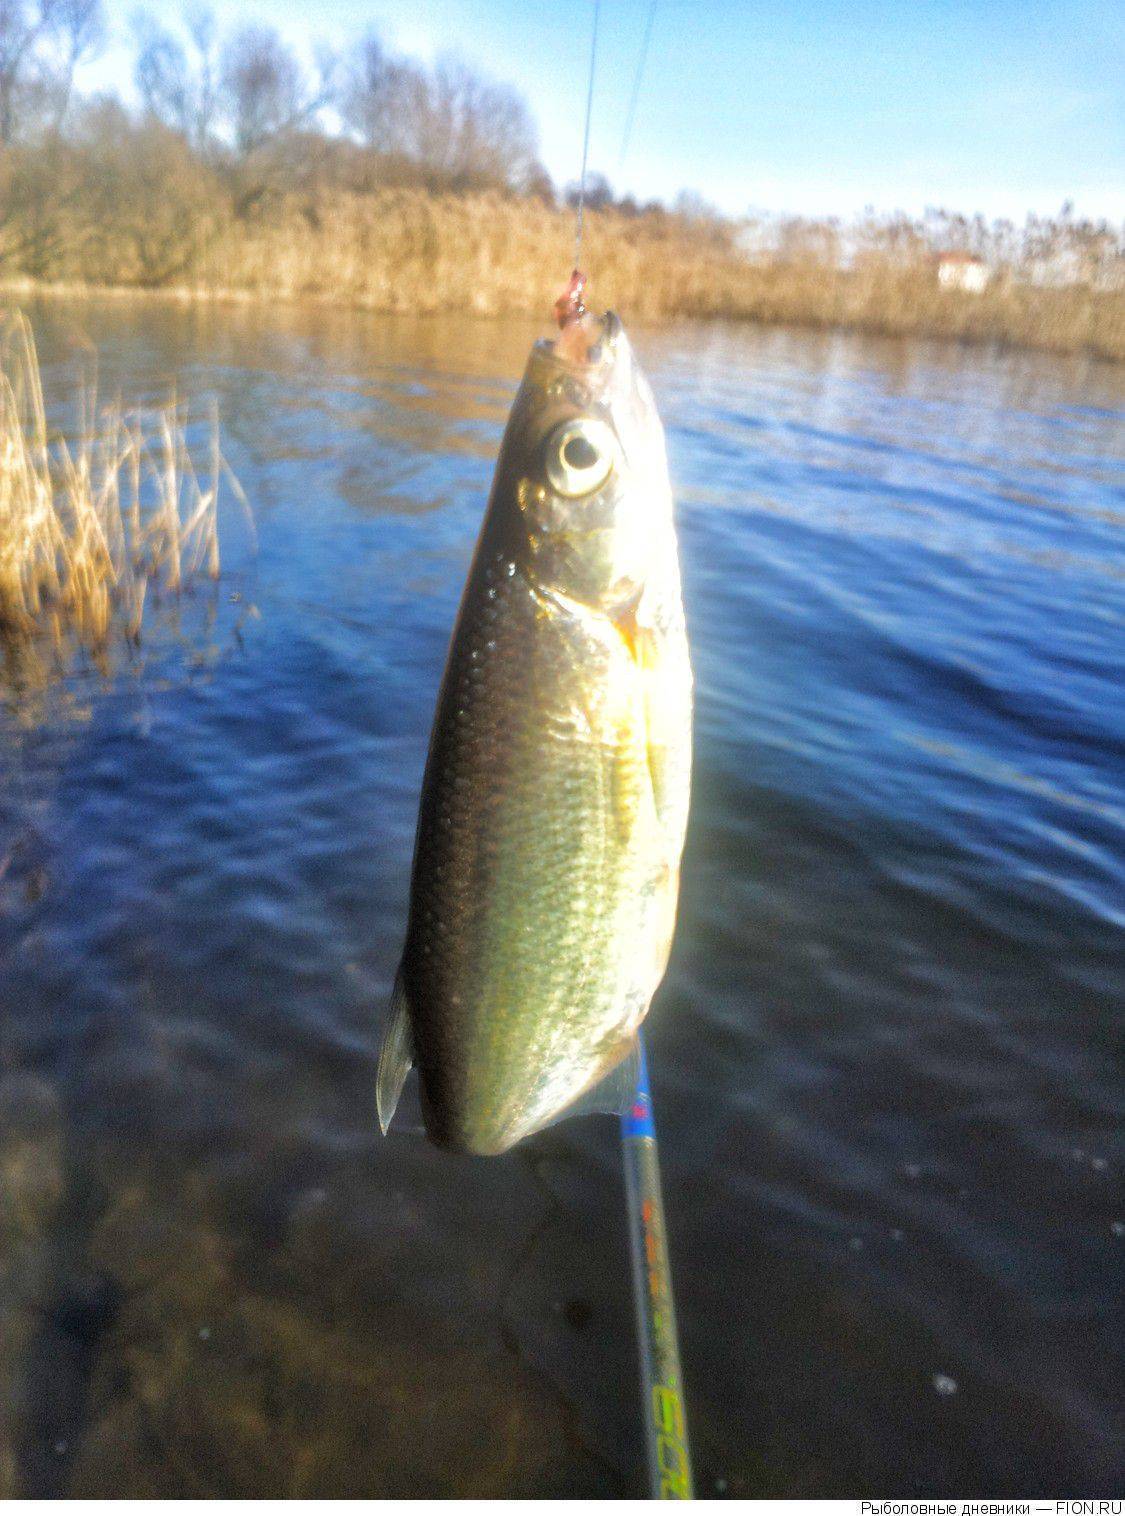 Озеро святое рыбалка - все про рыбалку